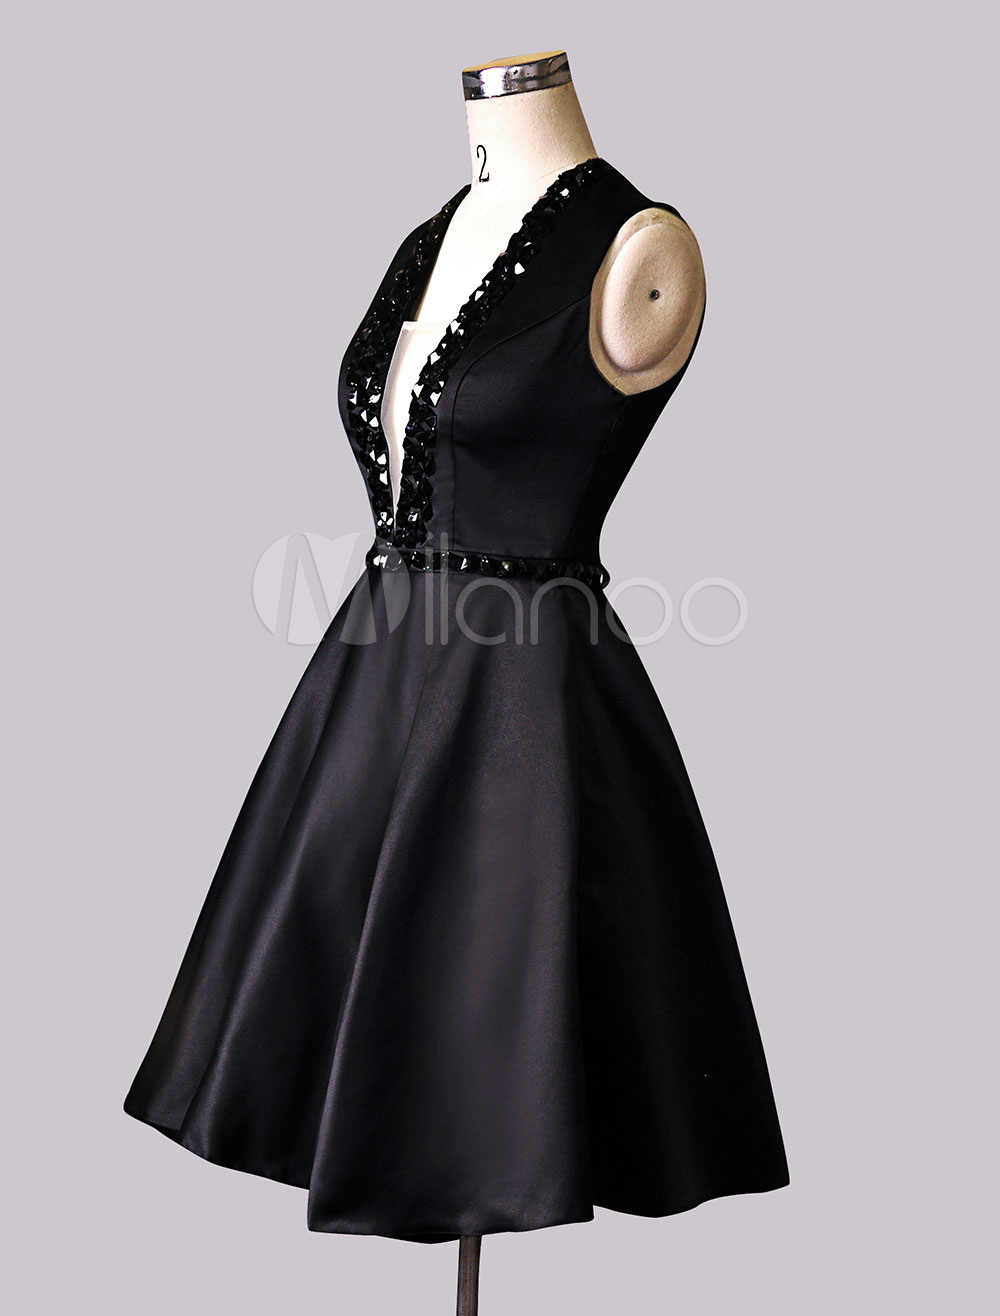 Black Deep V-neck Satin Homecoming Dress with Bold Beads - Milanoo.com